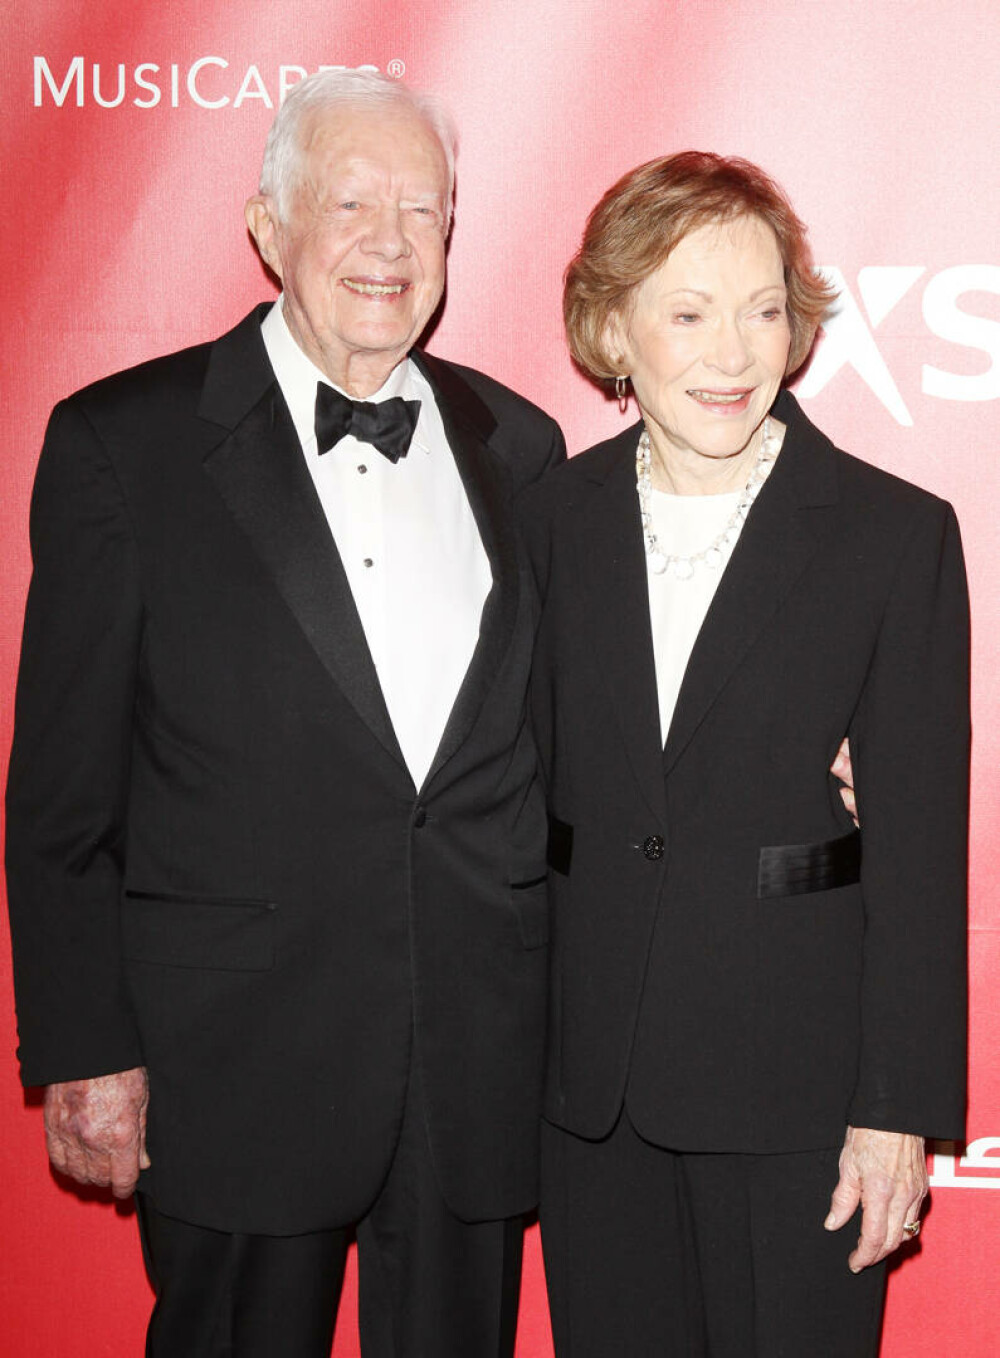 Fosta primă doamnă Rosalynn Carter suferă de demență. Povestea de dragoste trăită de ea și Jimmy Carter | GALERIE FOTO - Imaginea 6